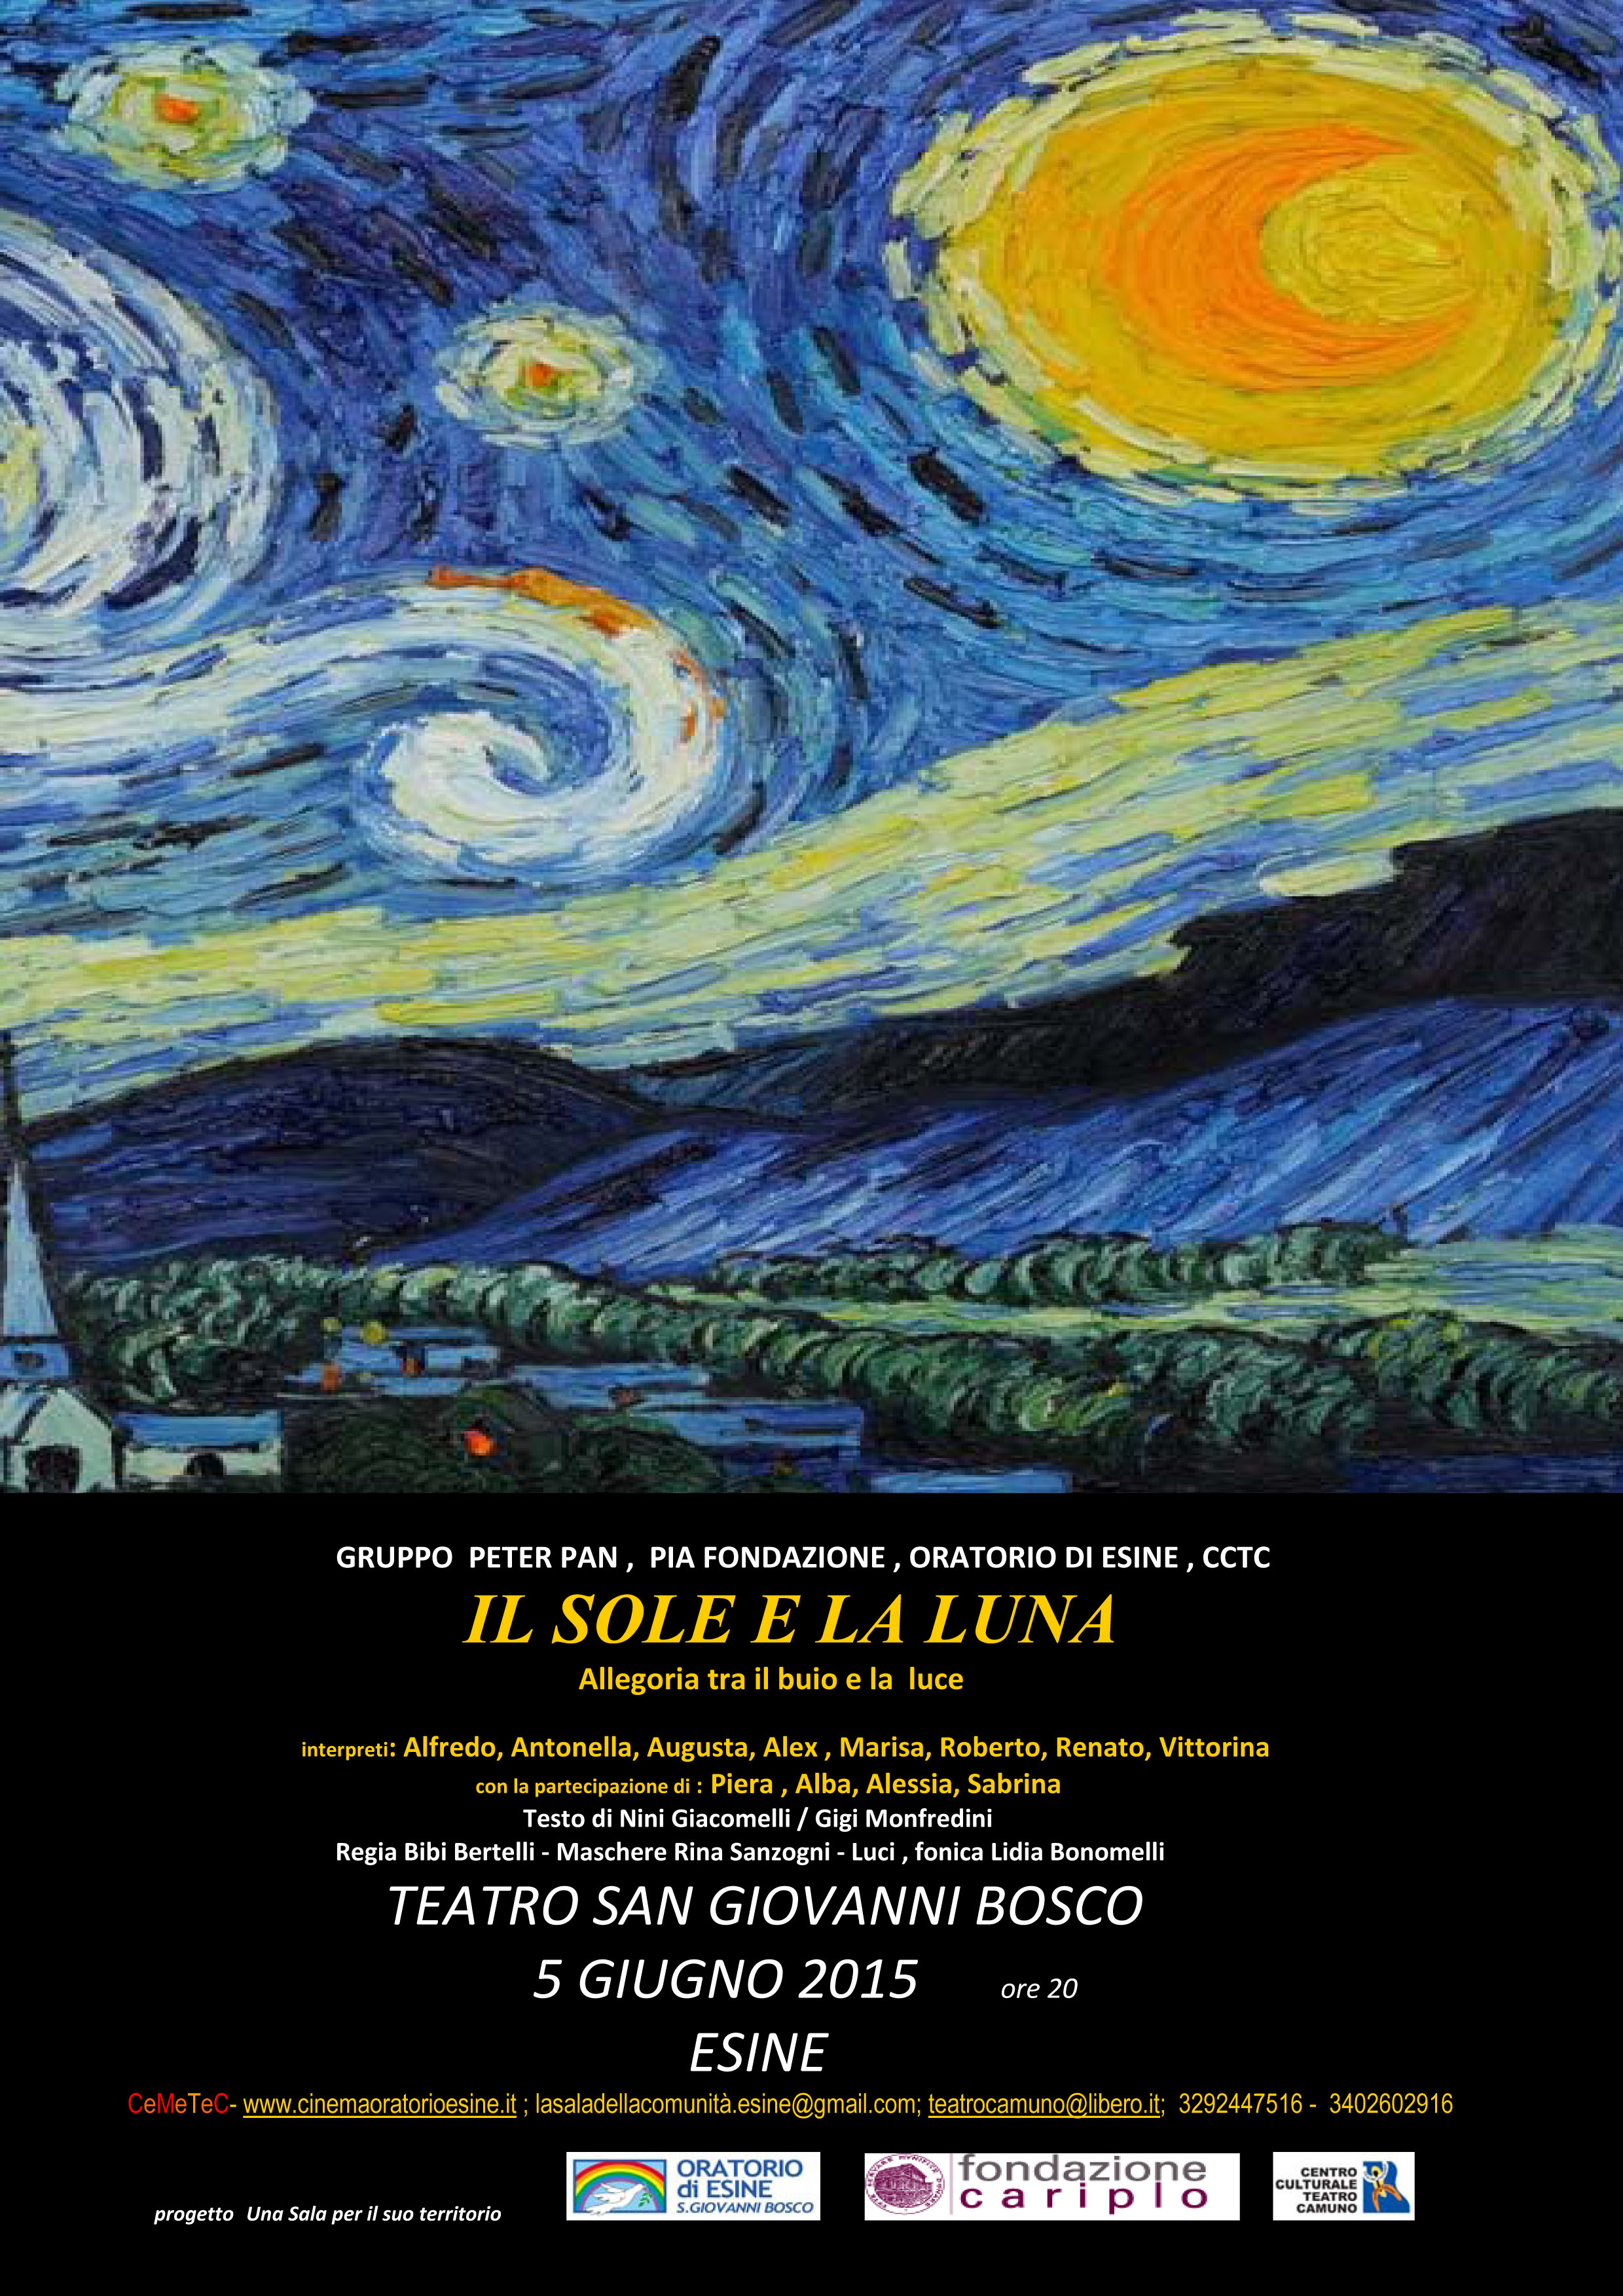 5 GIUGNO – IL SOLE E LA LUNA – Teatro S. Giovanni Bosco ore 20